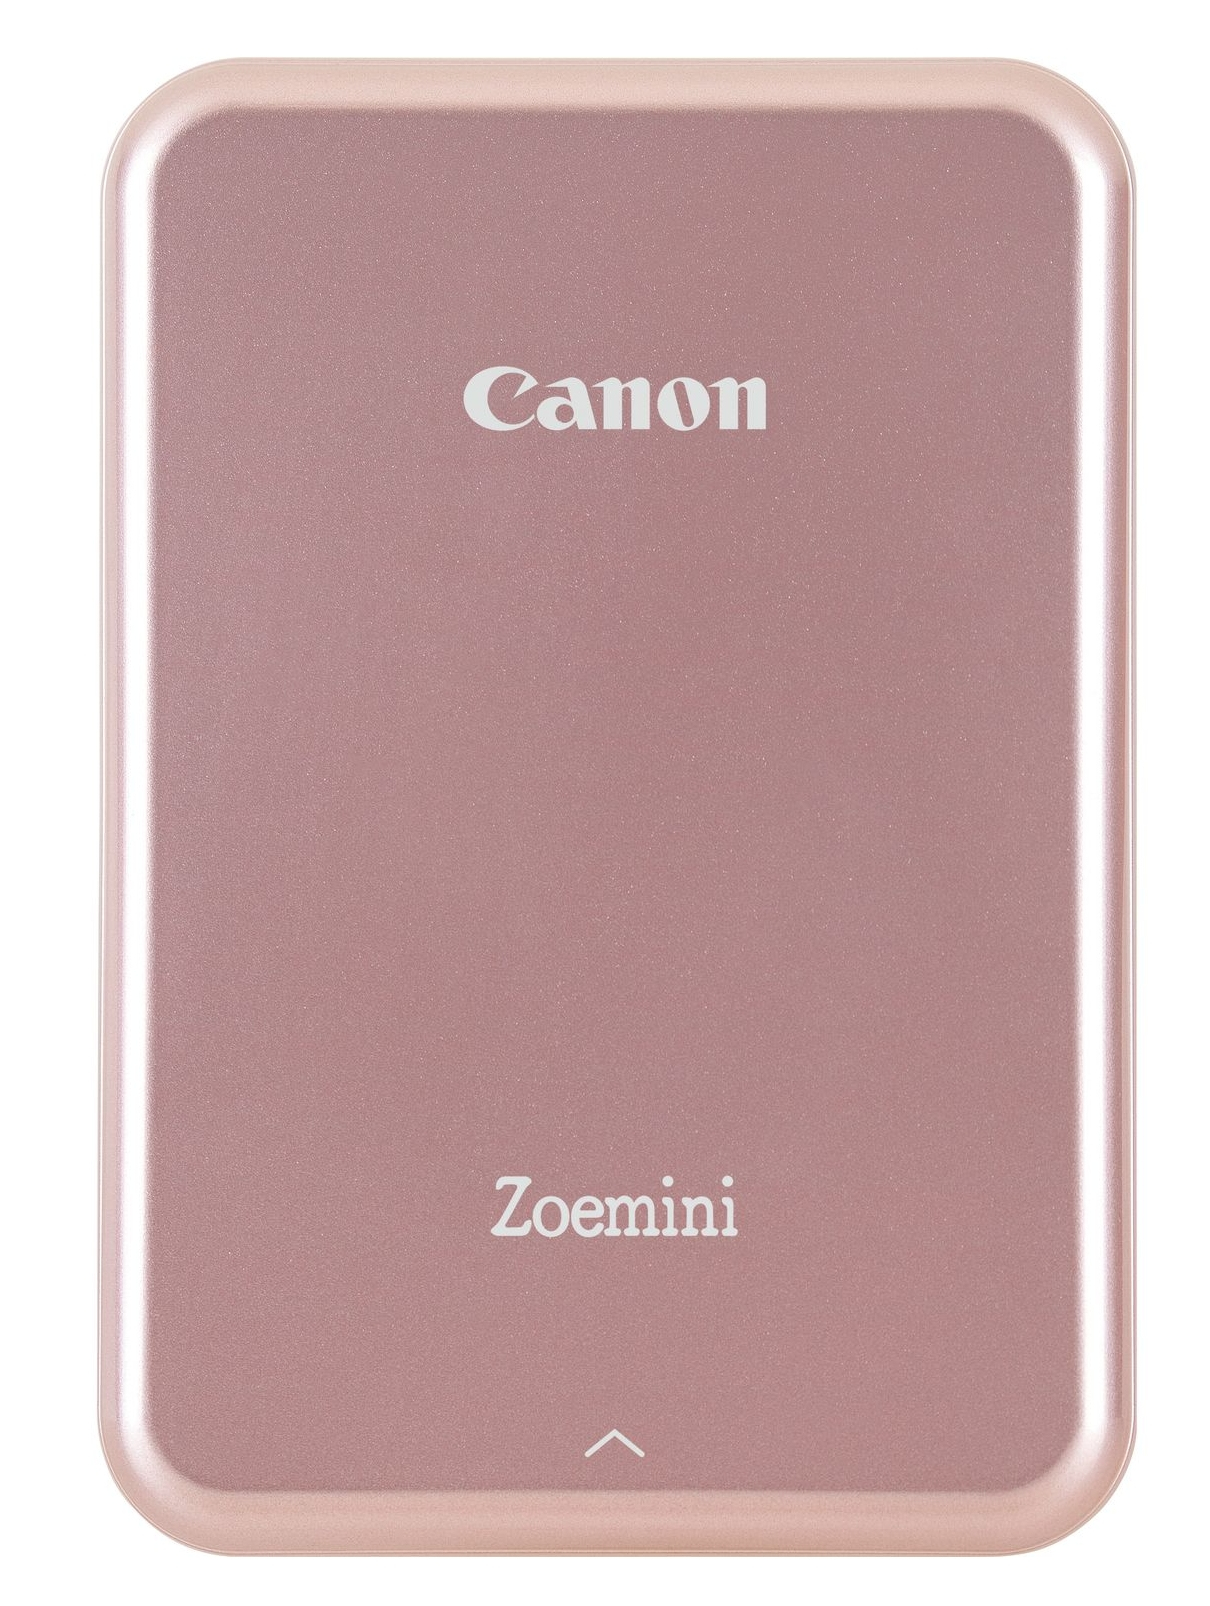 Canon Zoemini Photo Printer Rose Gold